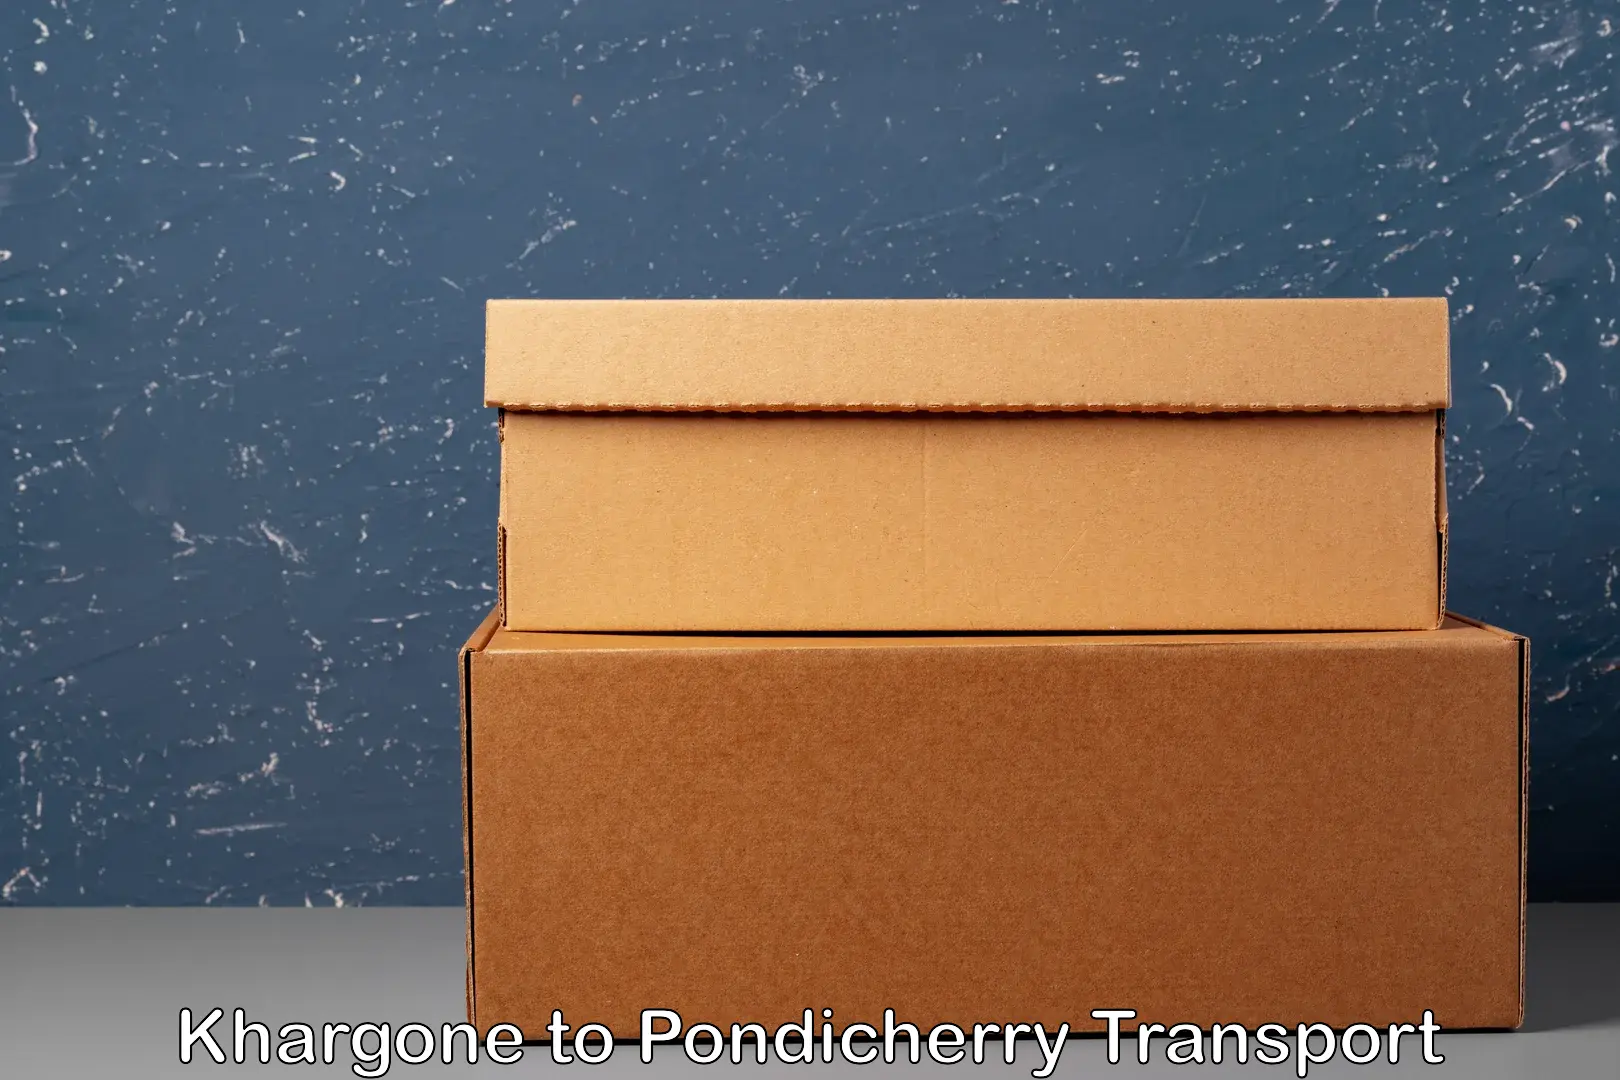 International cargo transportation services Khargone to Pondicherry University